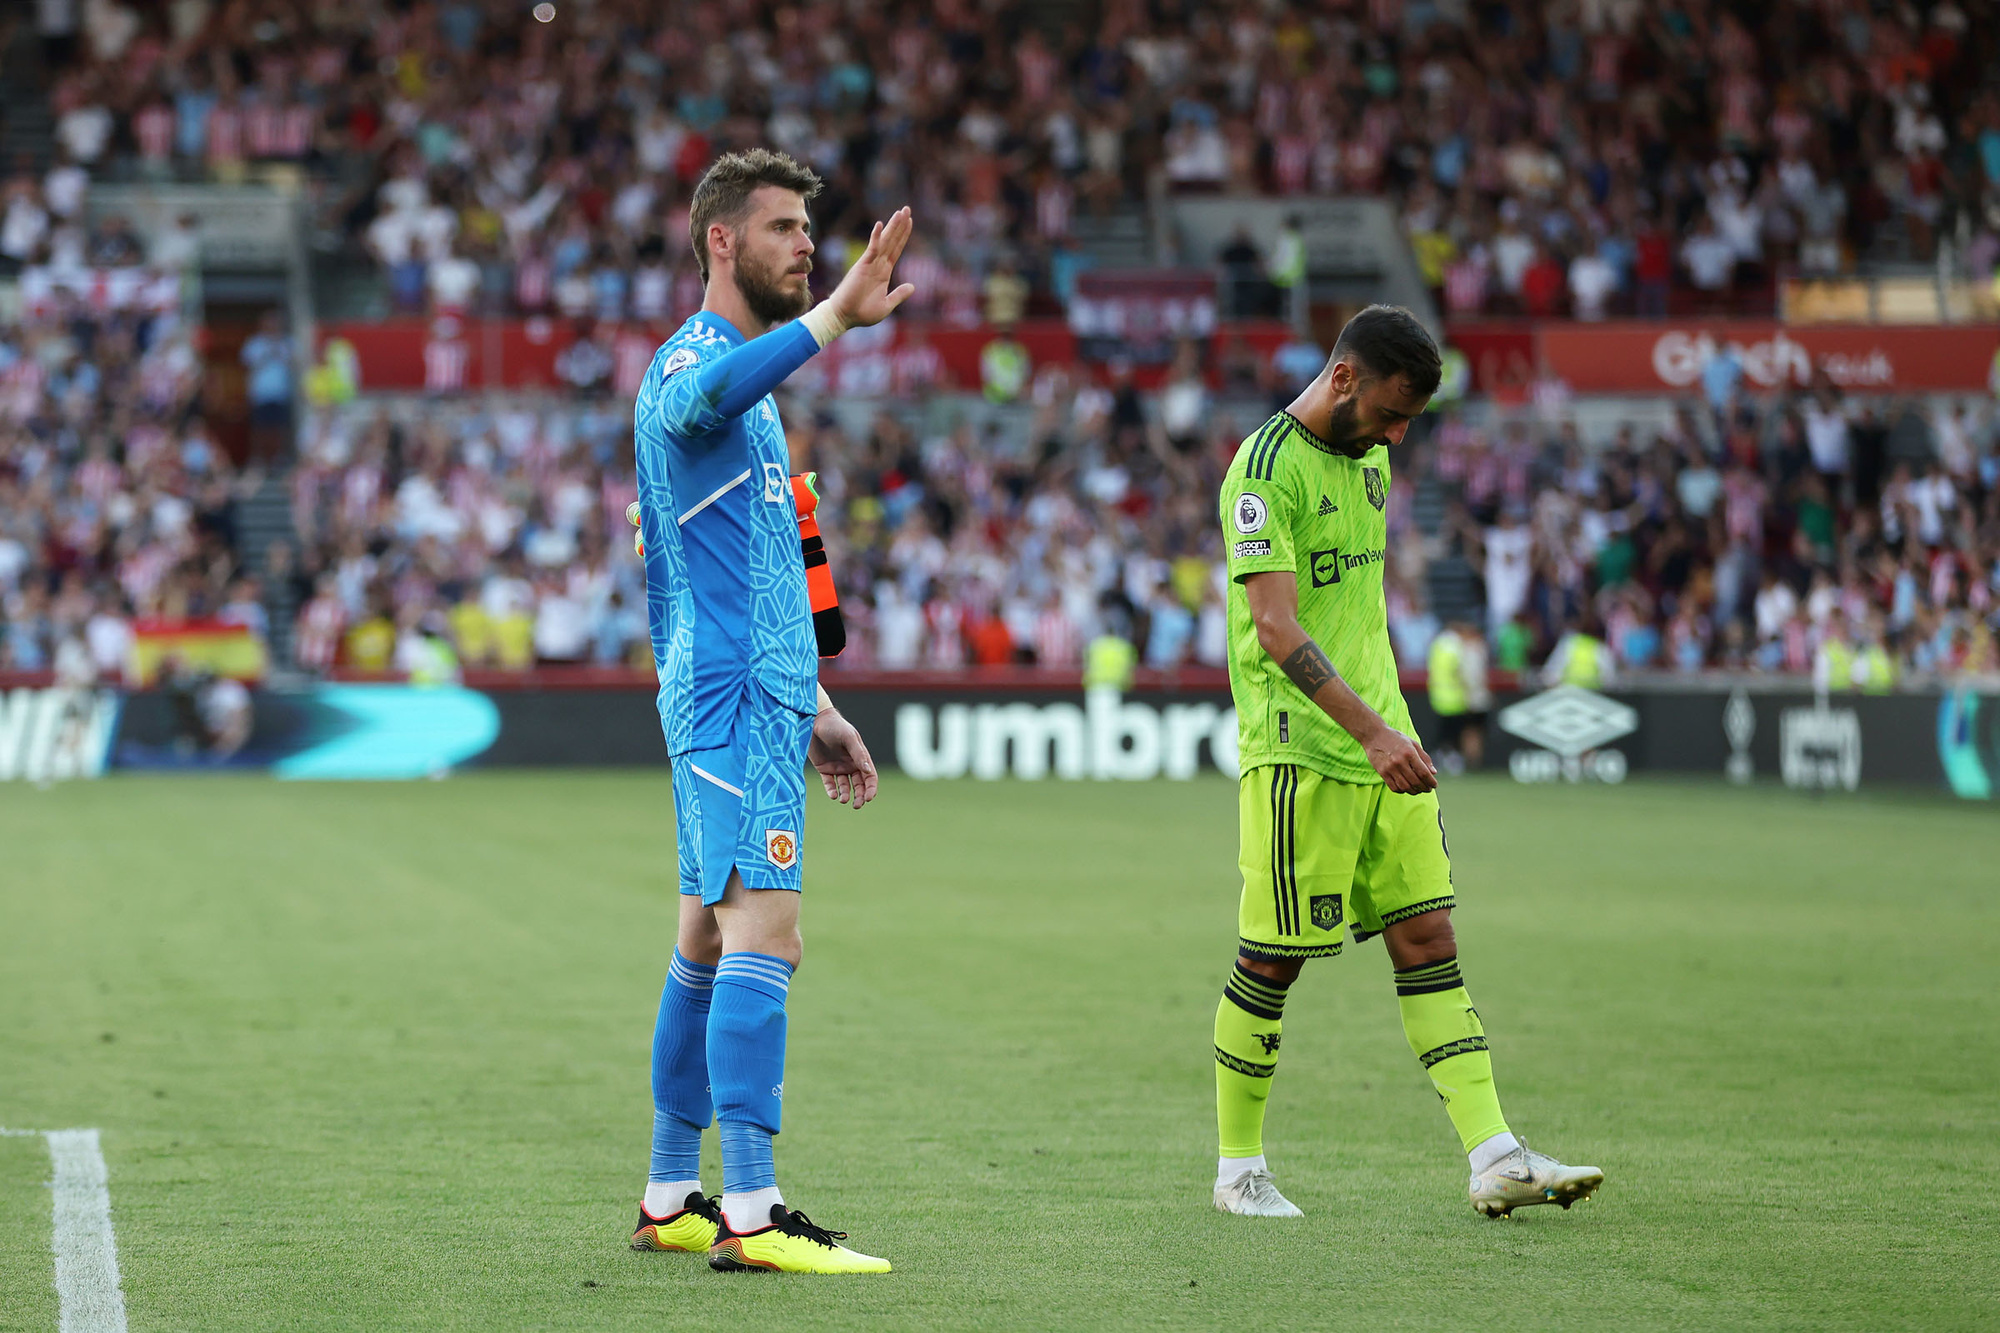 De hel van Man. United: 5 redenen waarom niets nog lukt op Old Trafford